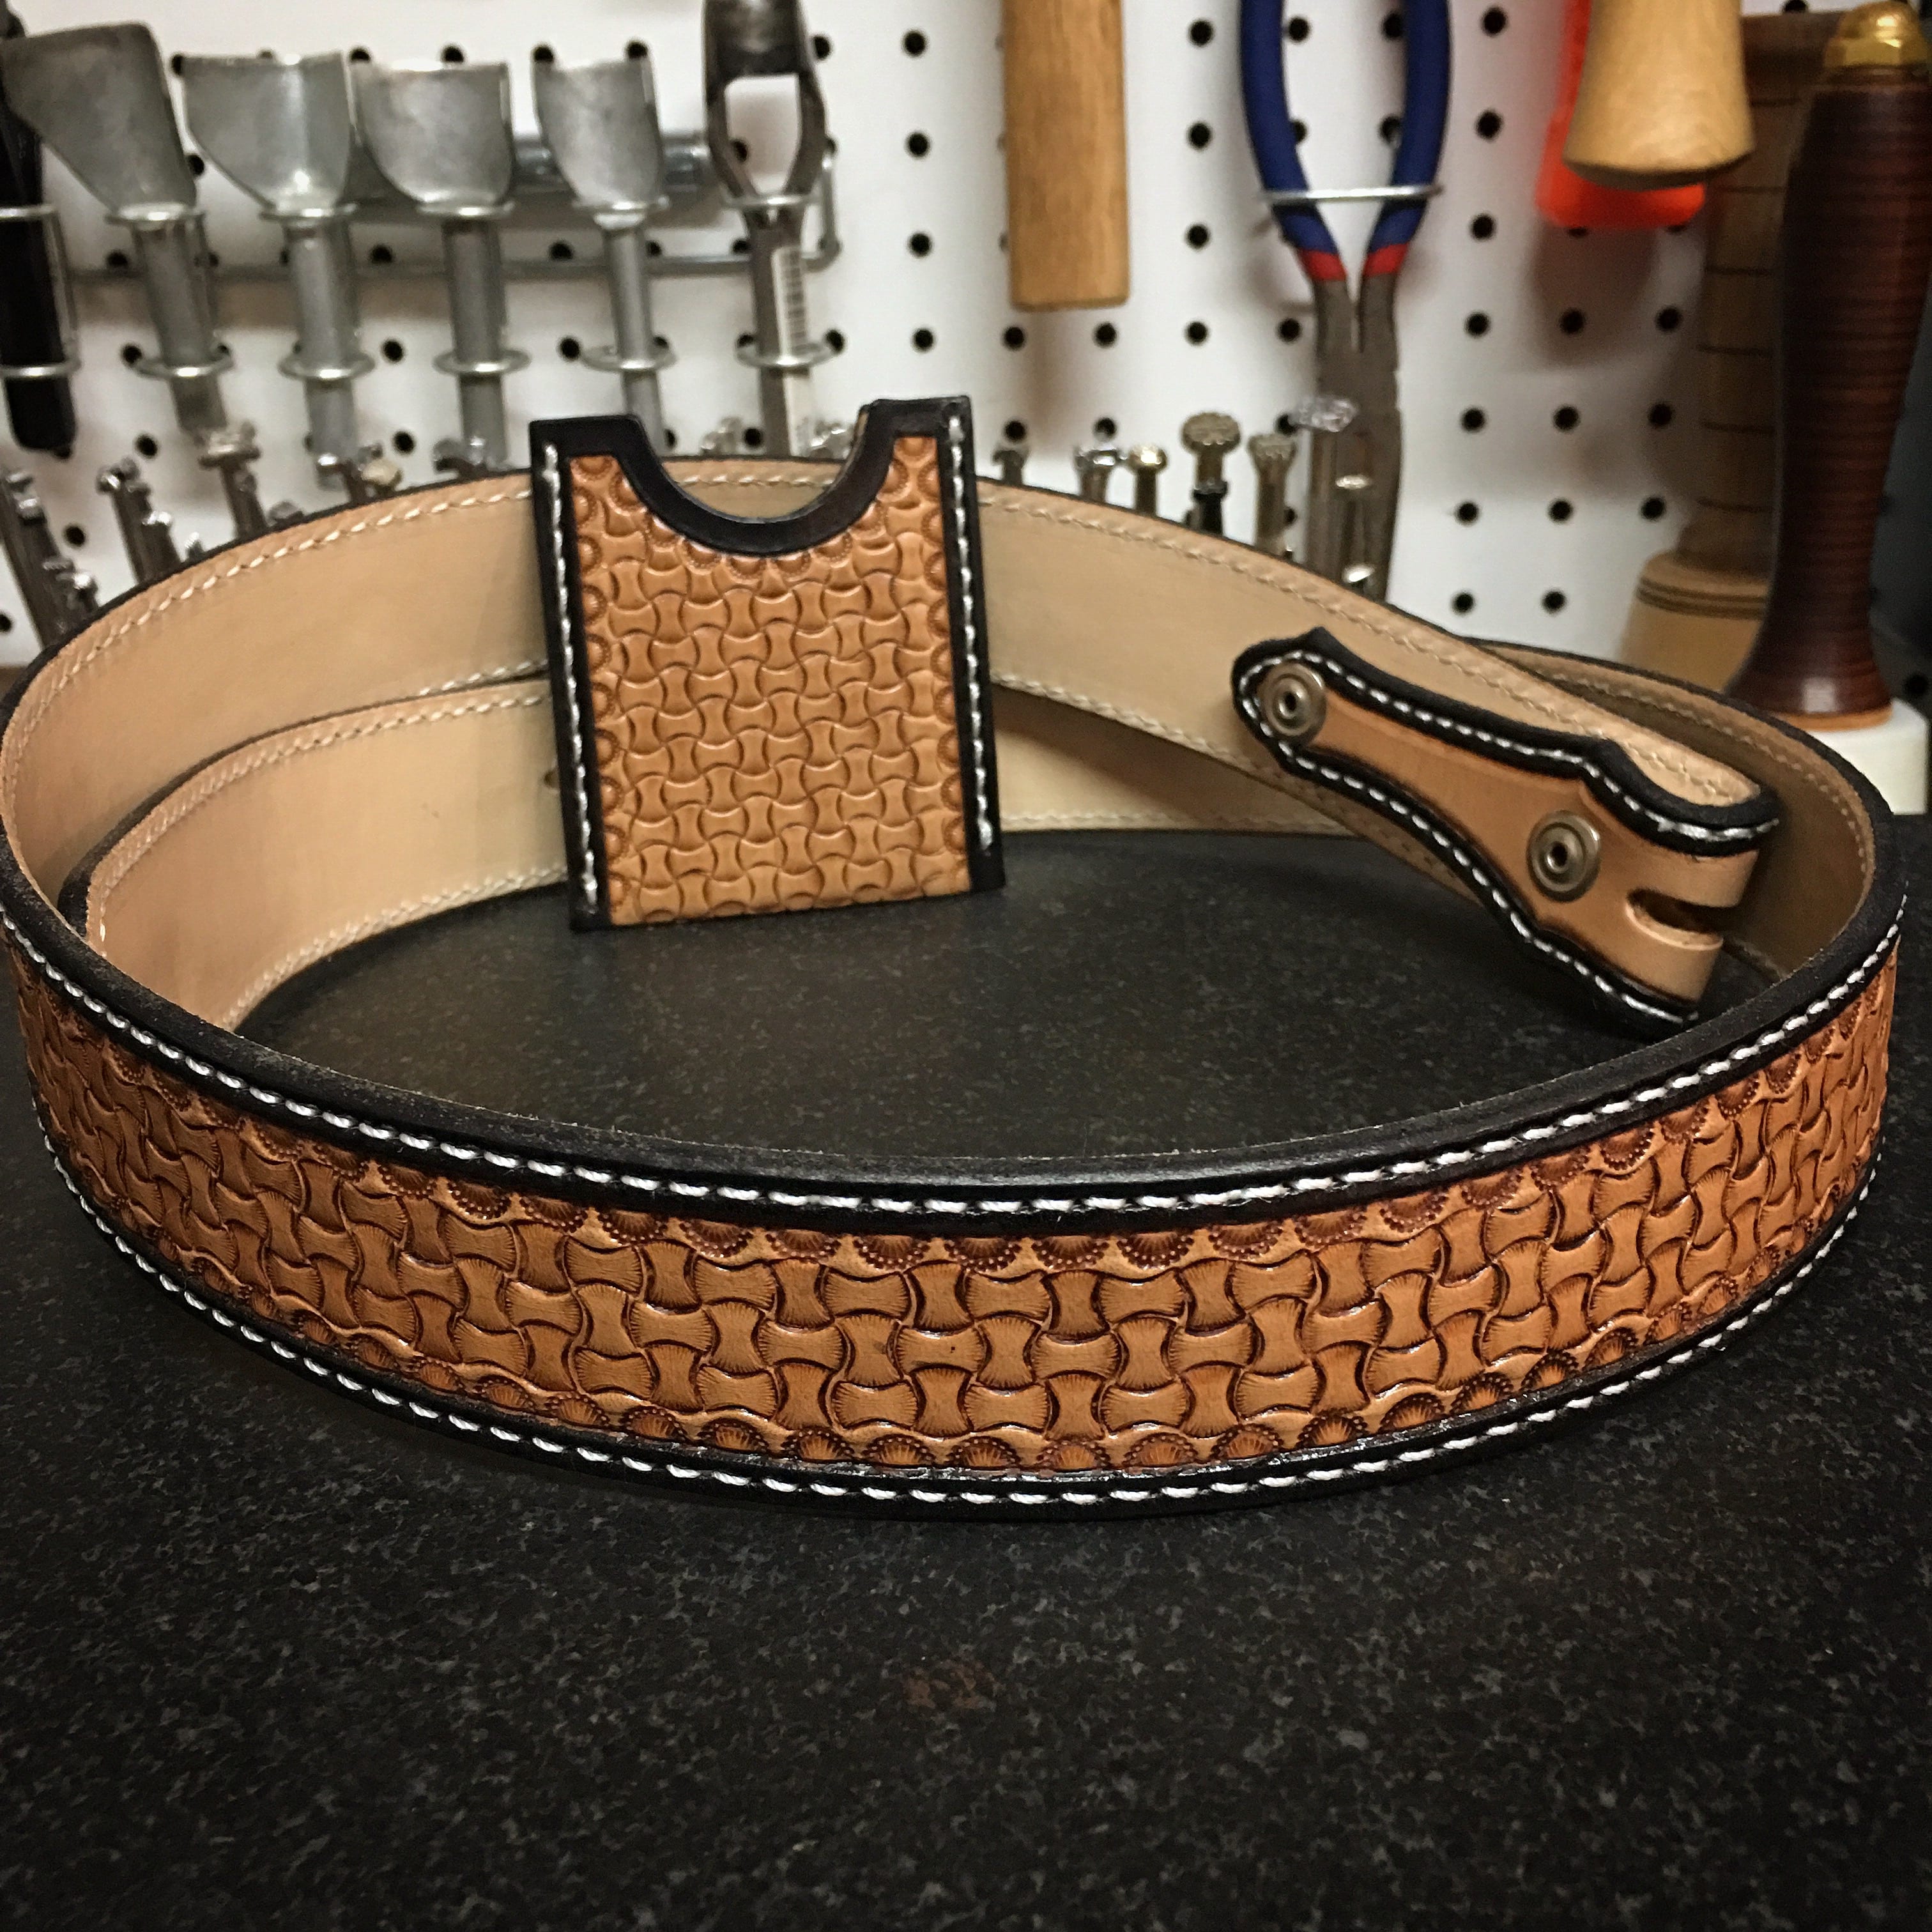 Custom Tooled Adult Leather Belt